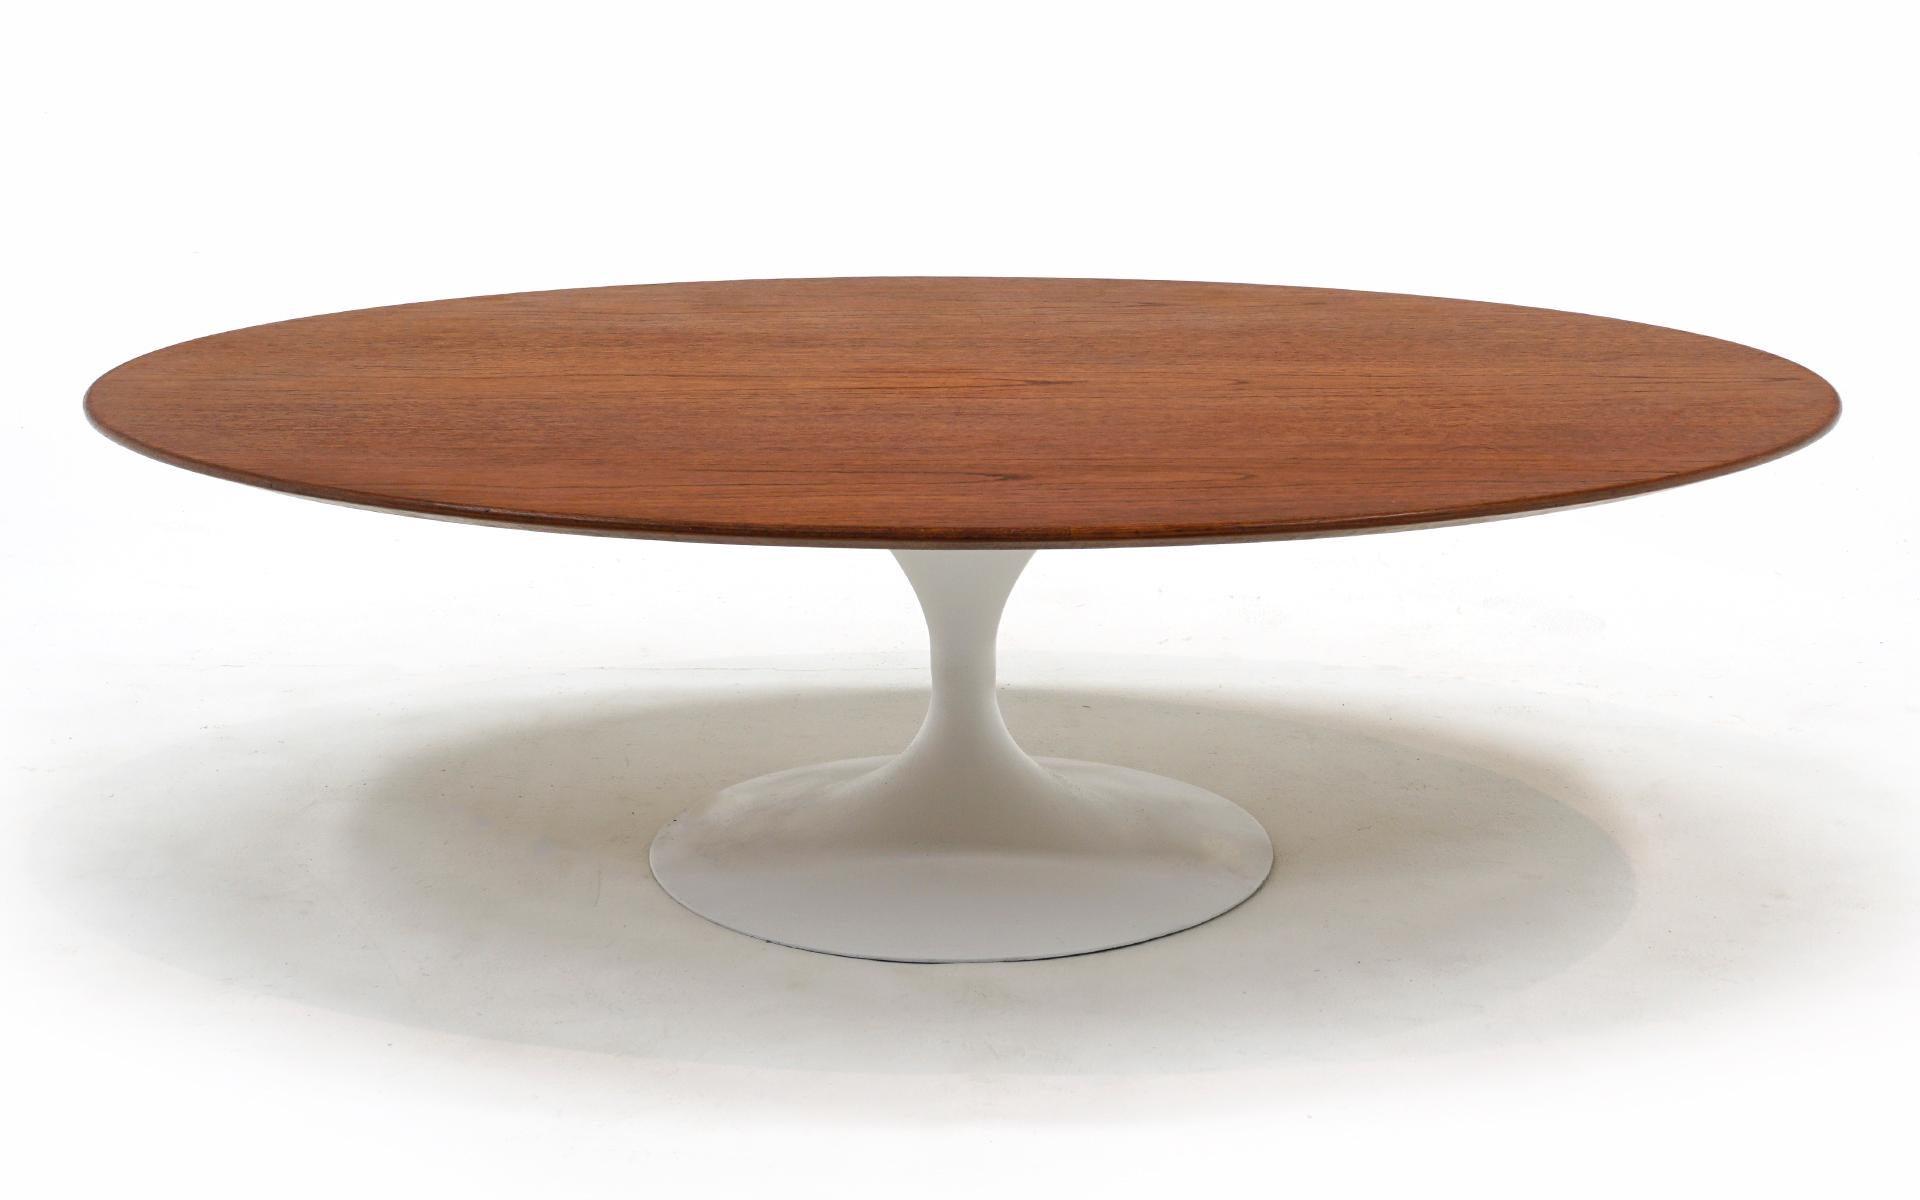 Früher, nicht mehr in Produktion befindlicher ovaler Couchtisch mit weißem Tulpenfuß, entworfen von Eero Saarinen und hergestellt von Knoll, 1960er Jahre.  Der Tisch hat eine Platte aus Walnussholz und ein lackiertes Gusseisengestell.  Die frühen